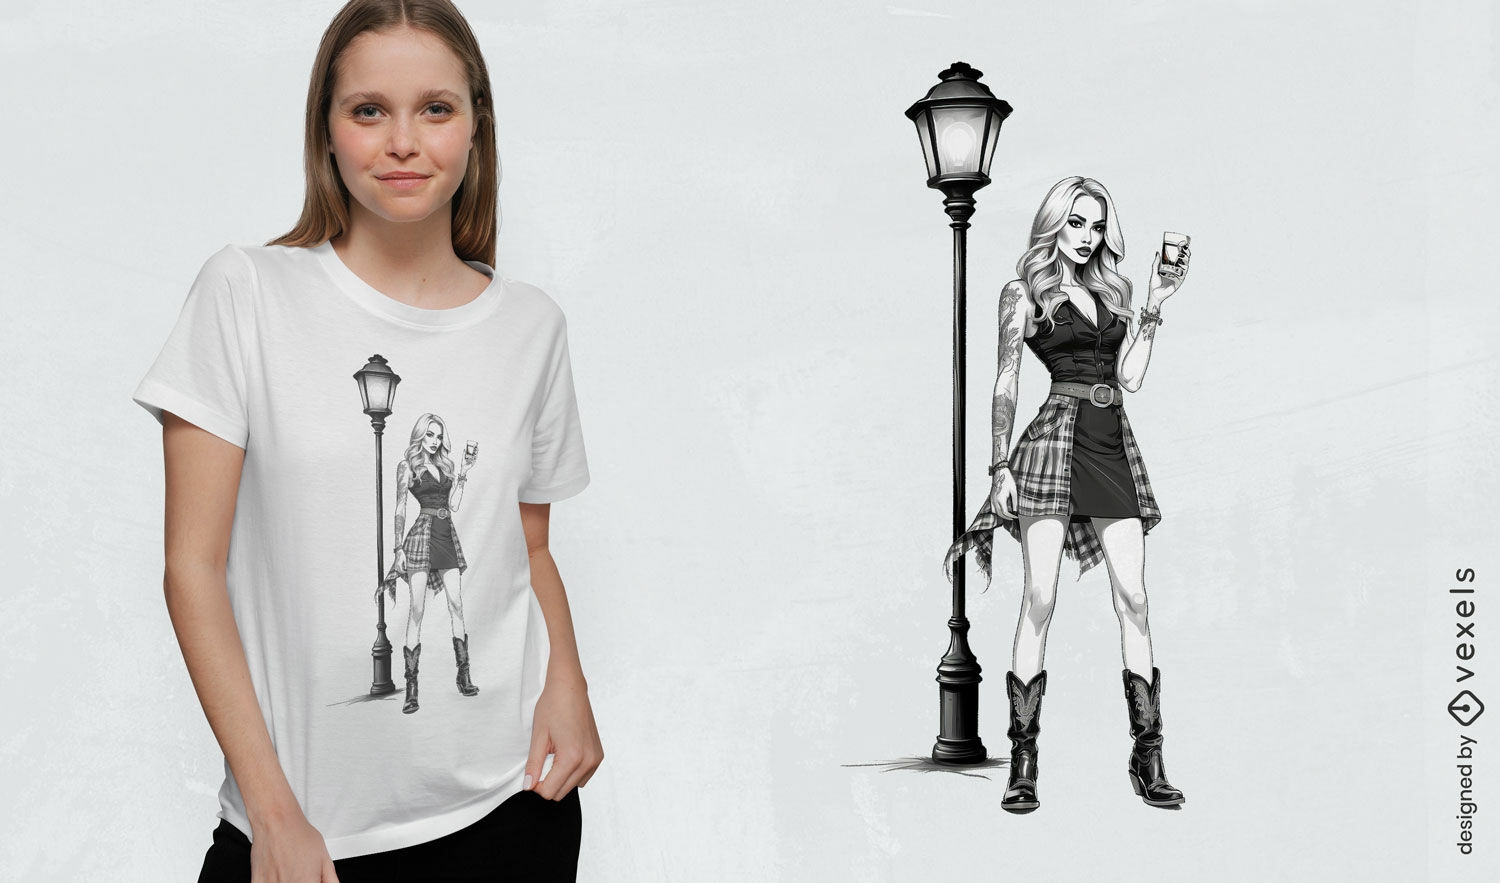 Diseño de camiseta de chica de moda callejera.